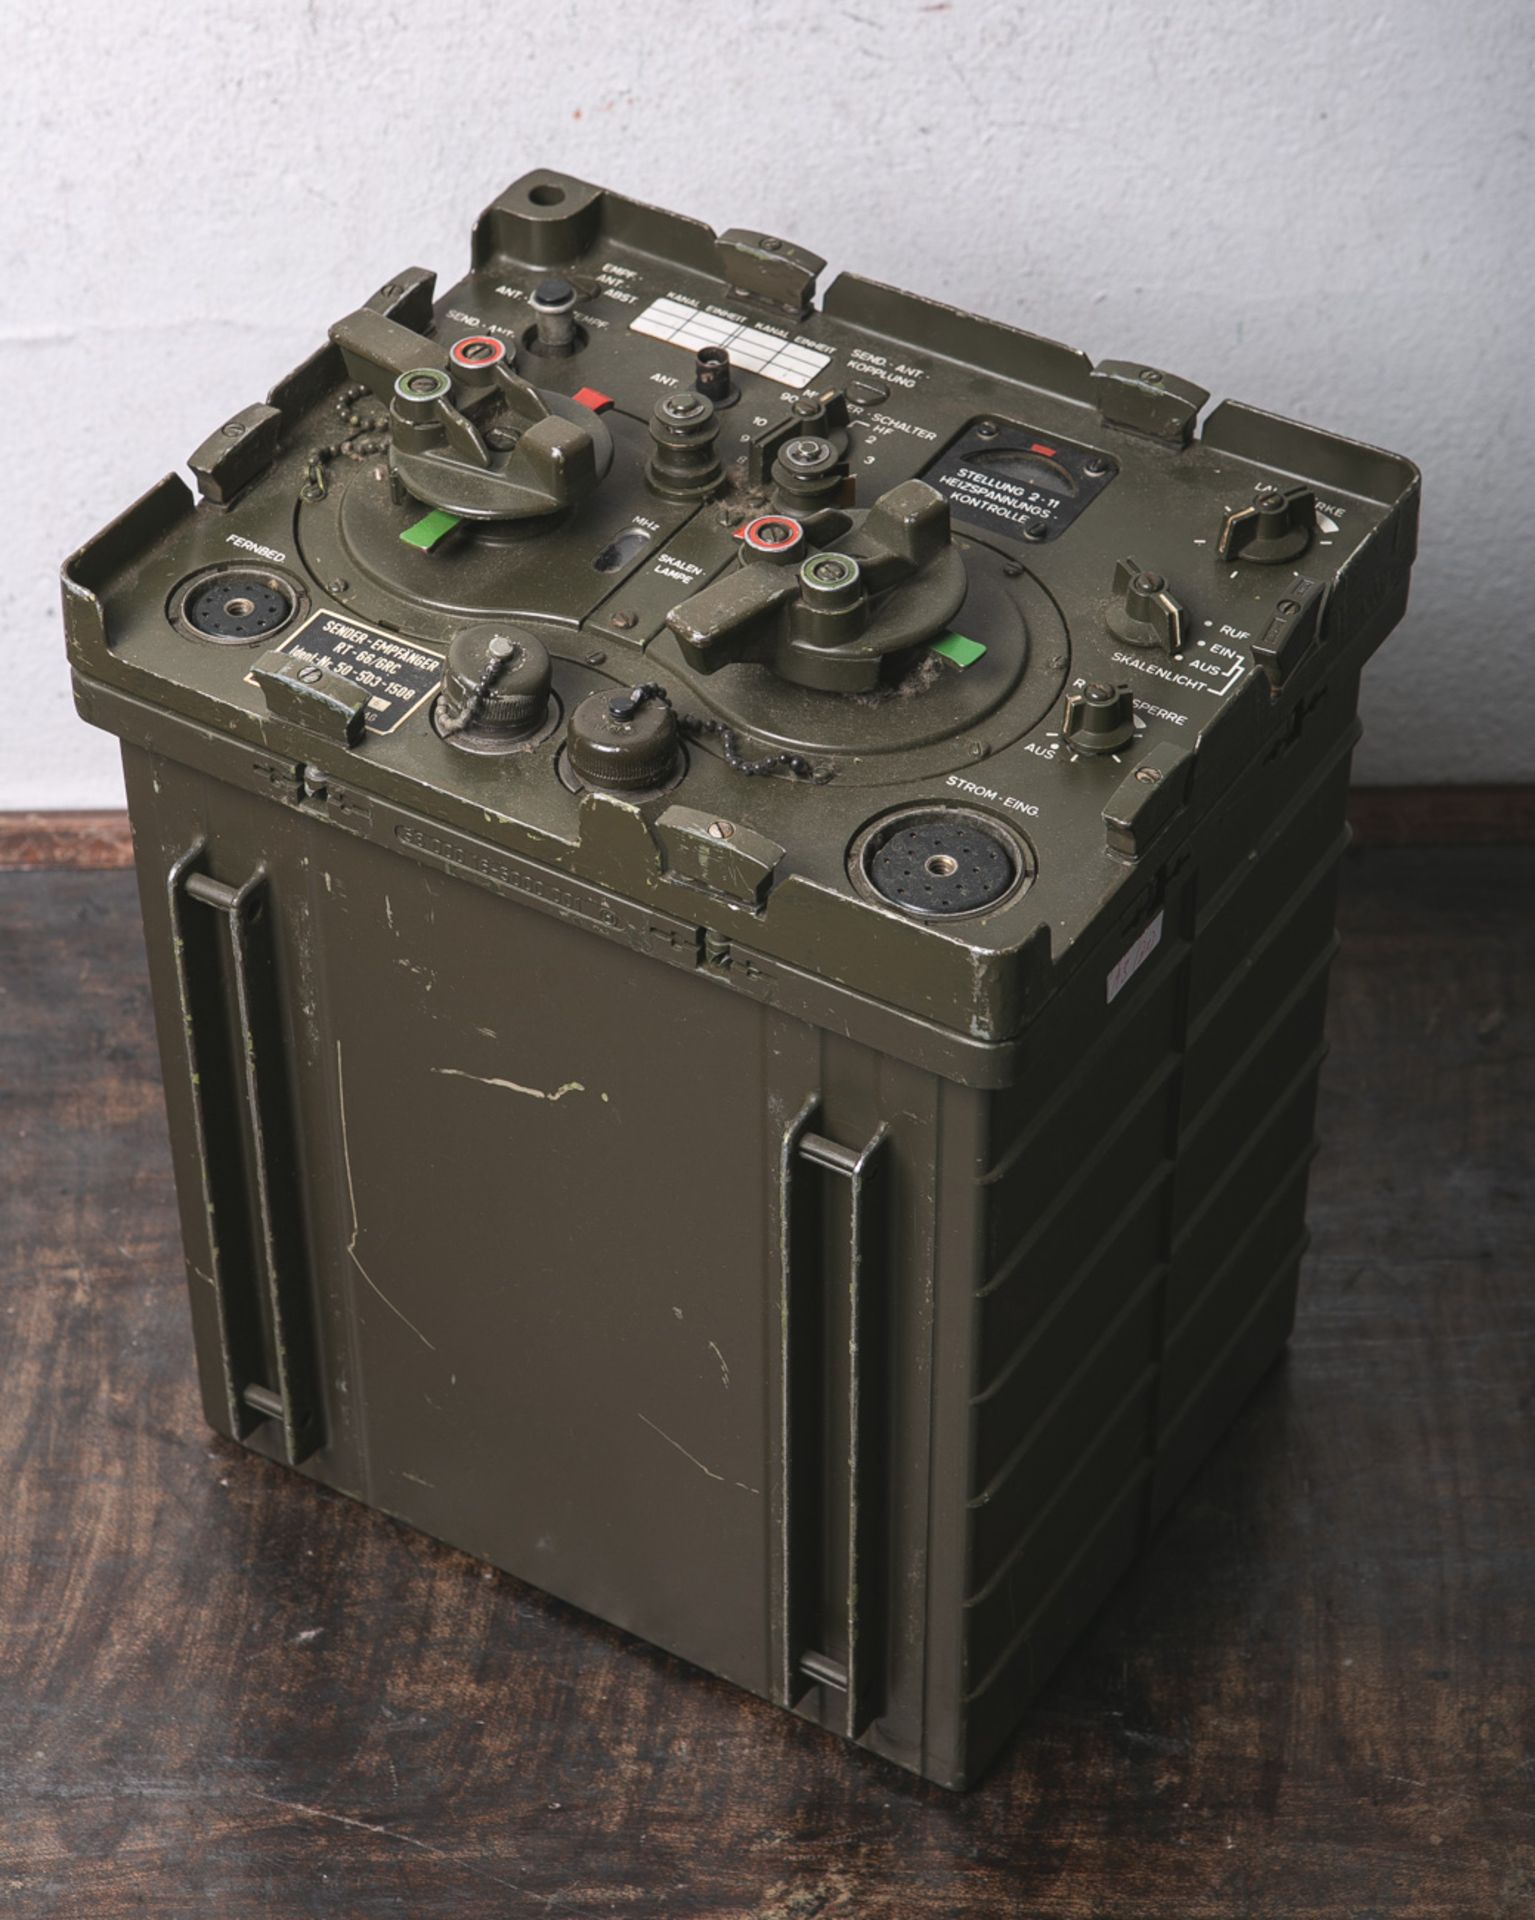 Frühe Bundeswehr-Funkanlage (Siemens u. Halske AG), bestehend aus: "Sender-Empfänger RT